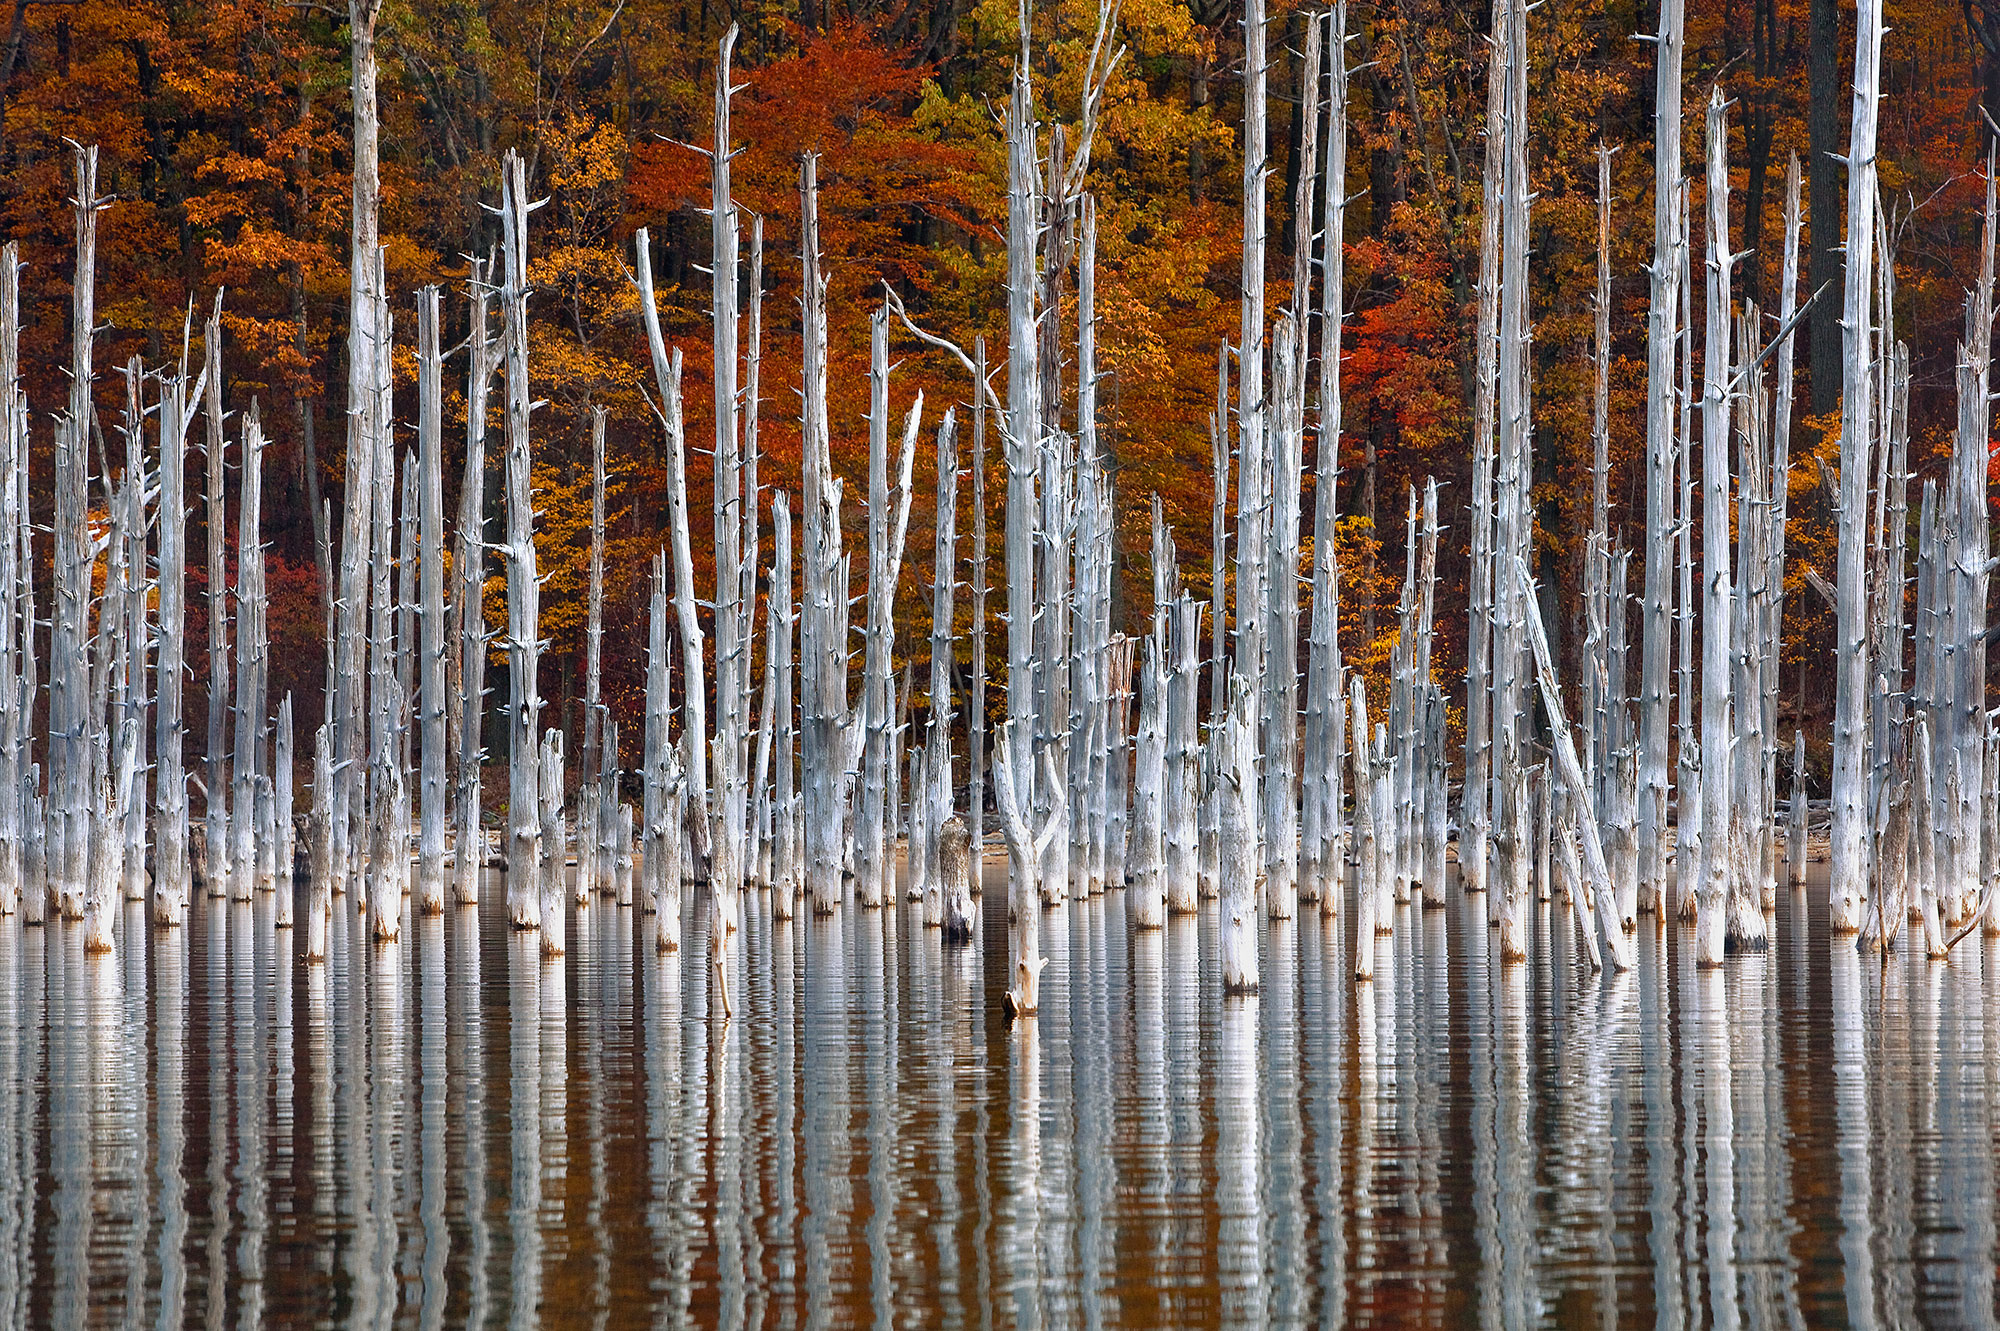 Dead trees in water in fall season New Jersey-Remnants